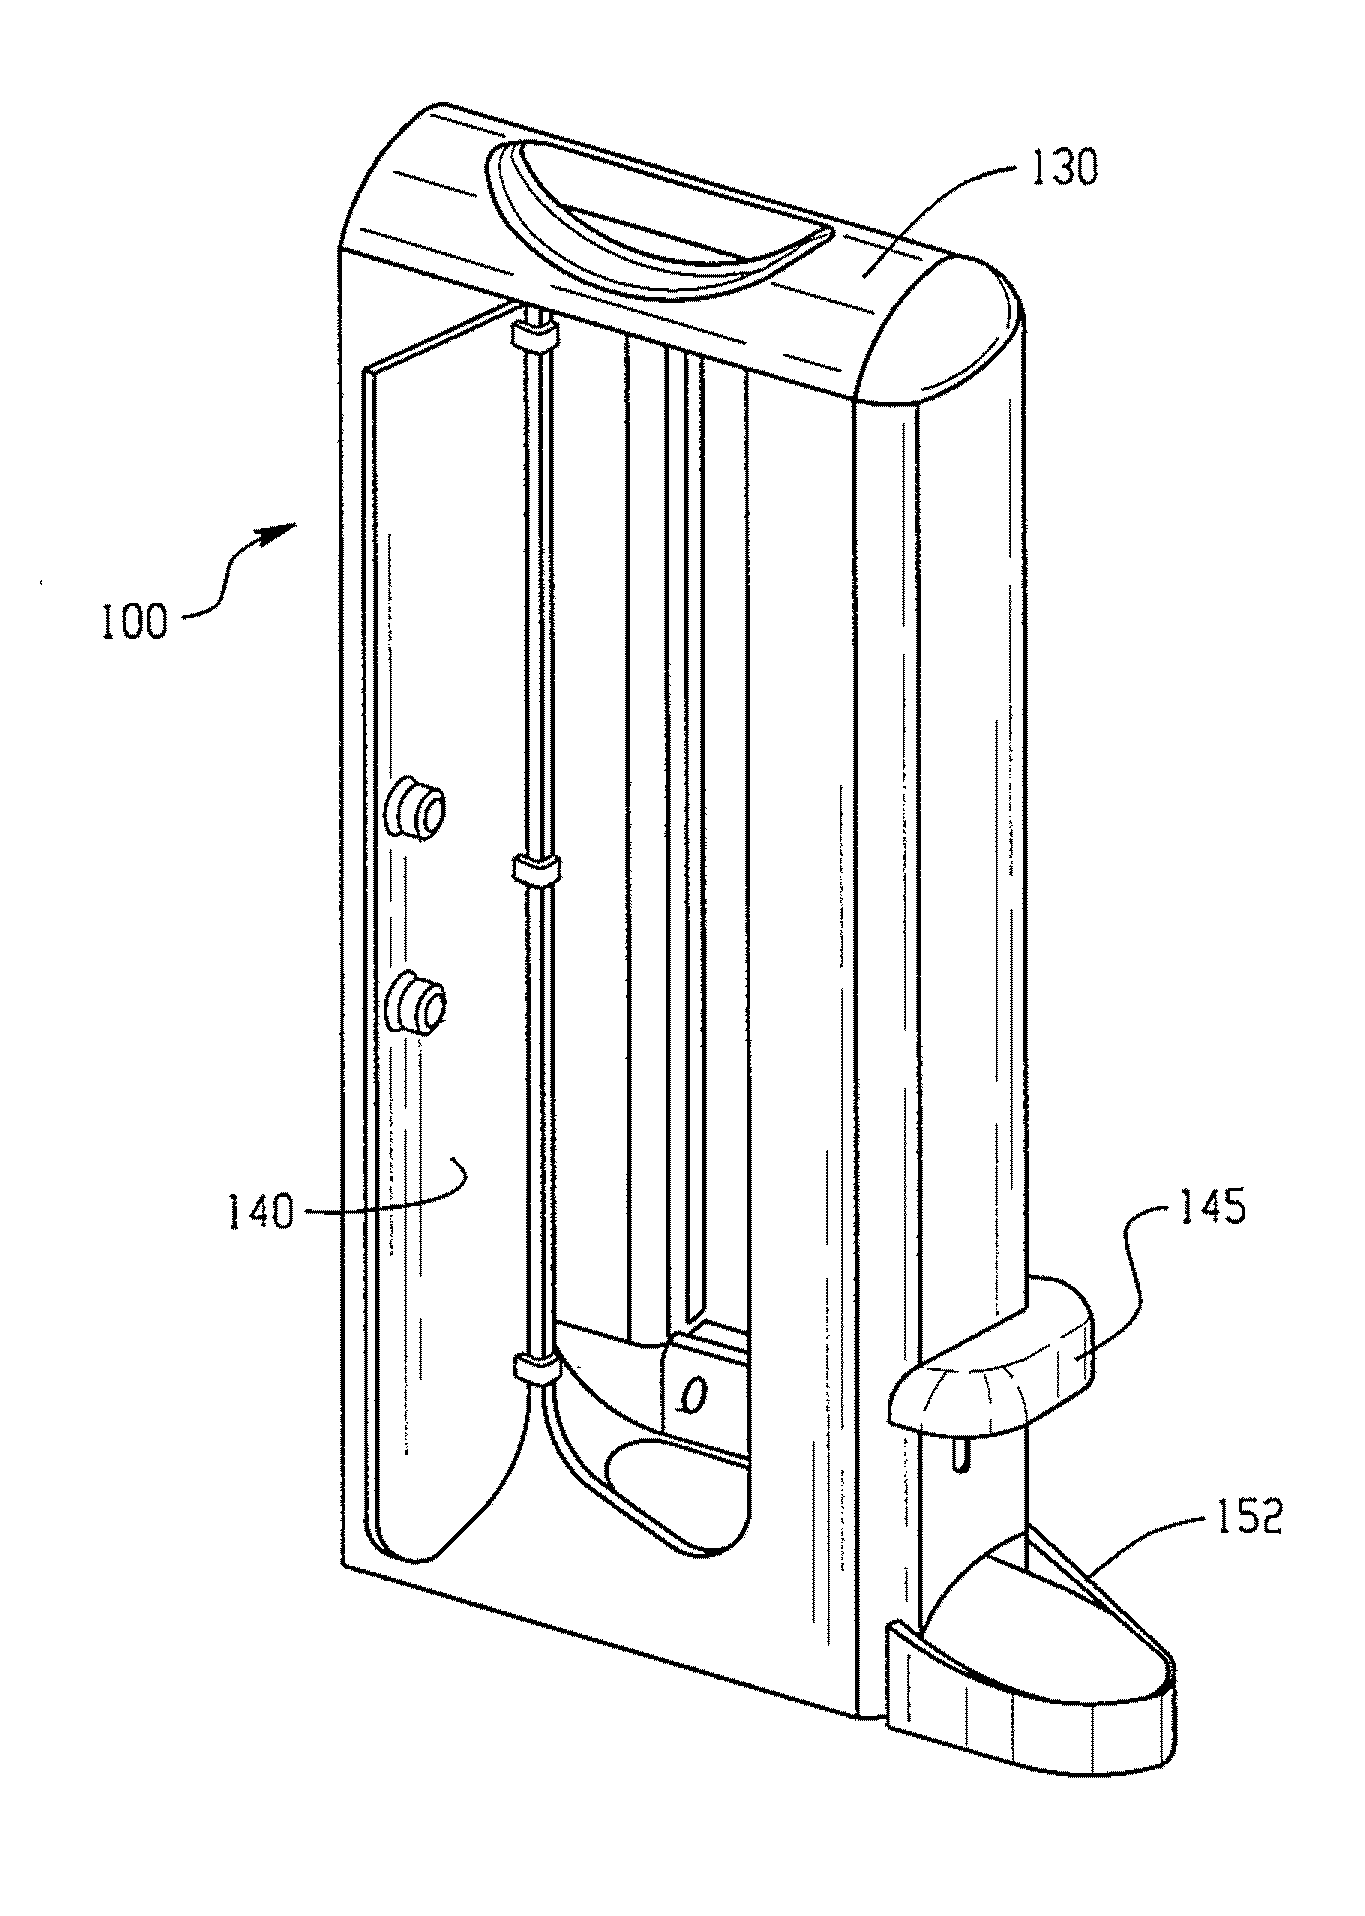 Cutlery Utensil Dispenser